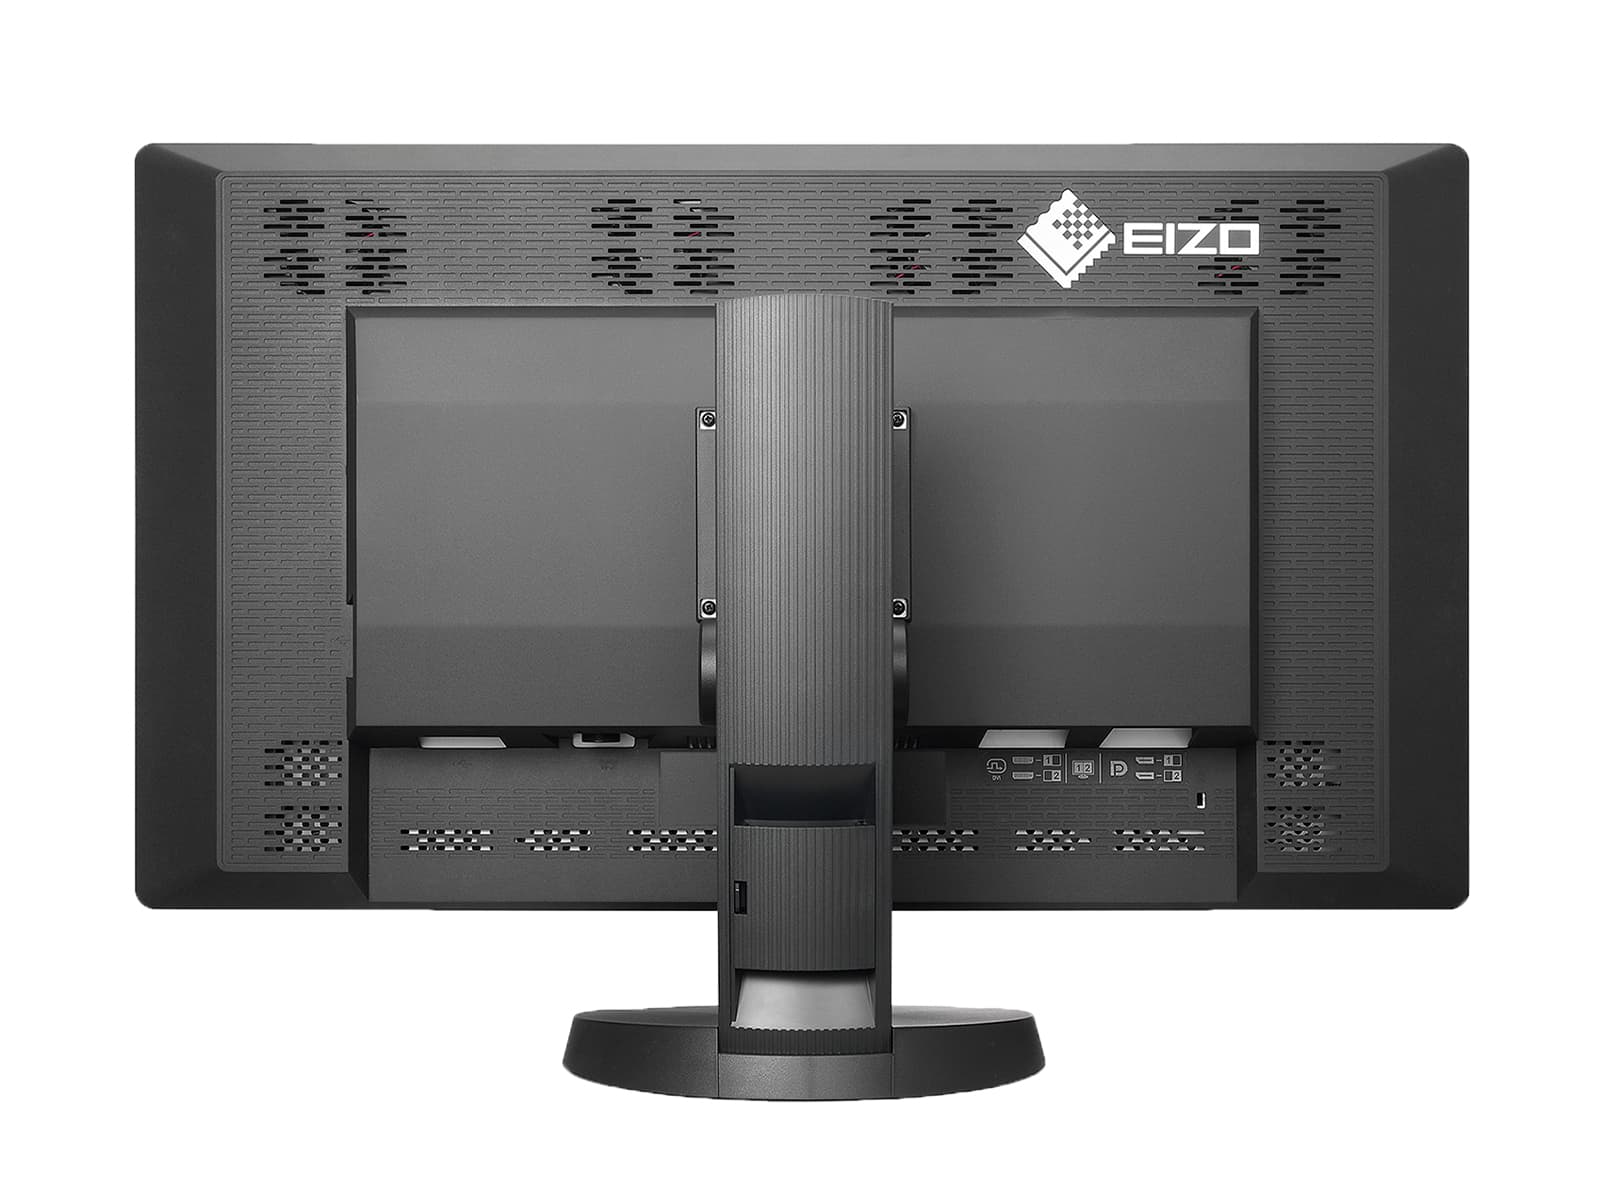 Pantalla de imágenes mamarias Eizo RadiForce RX850 Fusion Color LED Mammo 3D-DBT (RX850-BK) Monitors.com